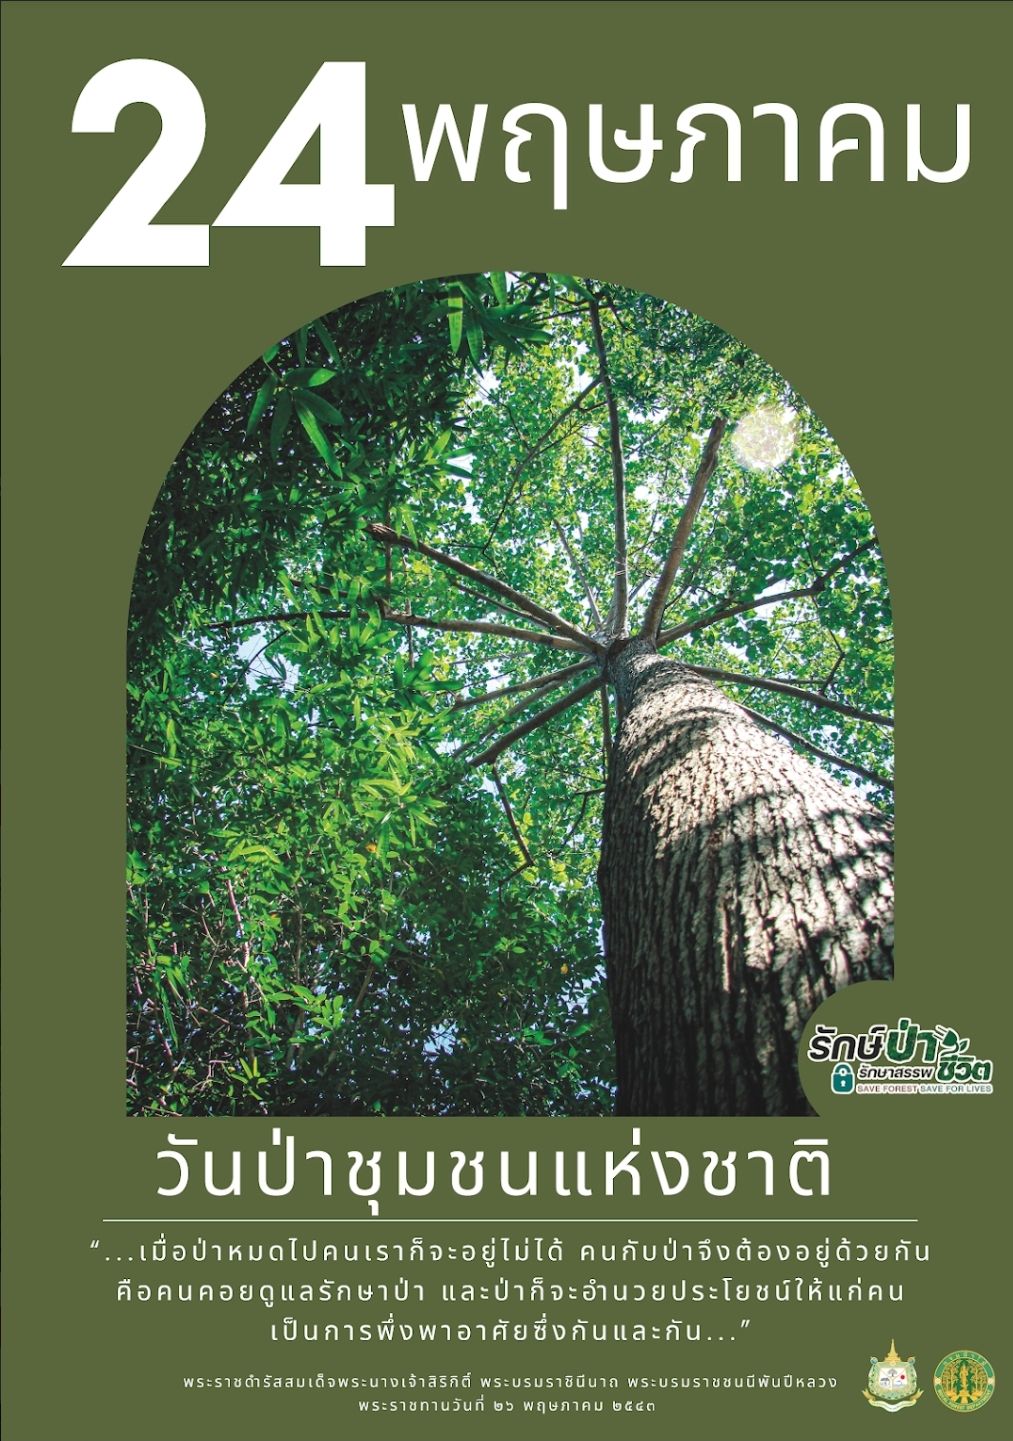 ประชาสัมพันธ์และรณรงค์การจัดกิจกรรมวันป่าชุมชนแห่งชาติ ประจำปี พ.ศ. 2566